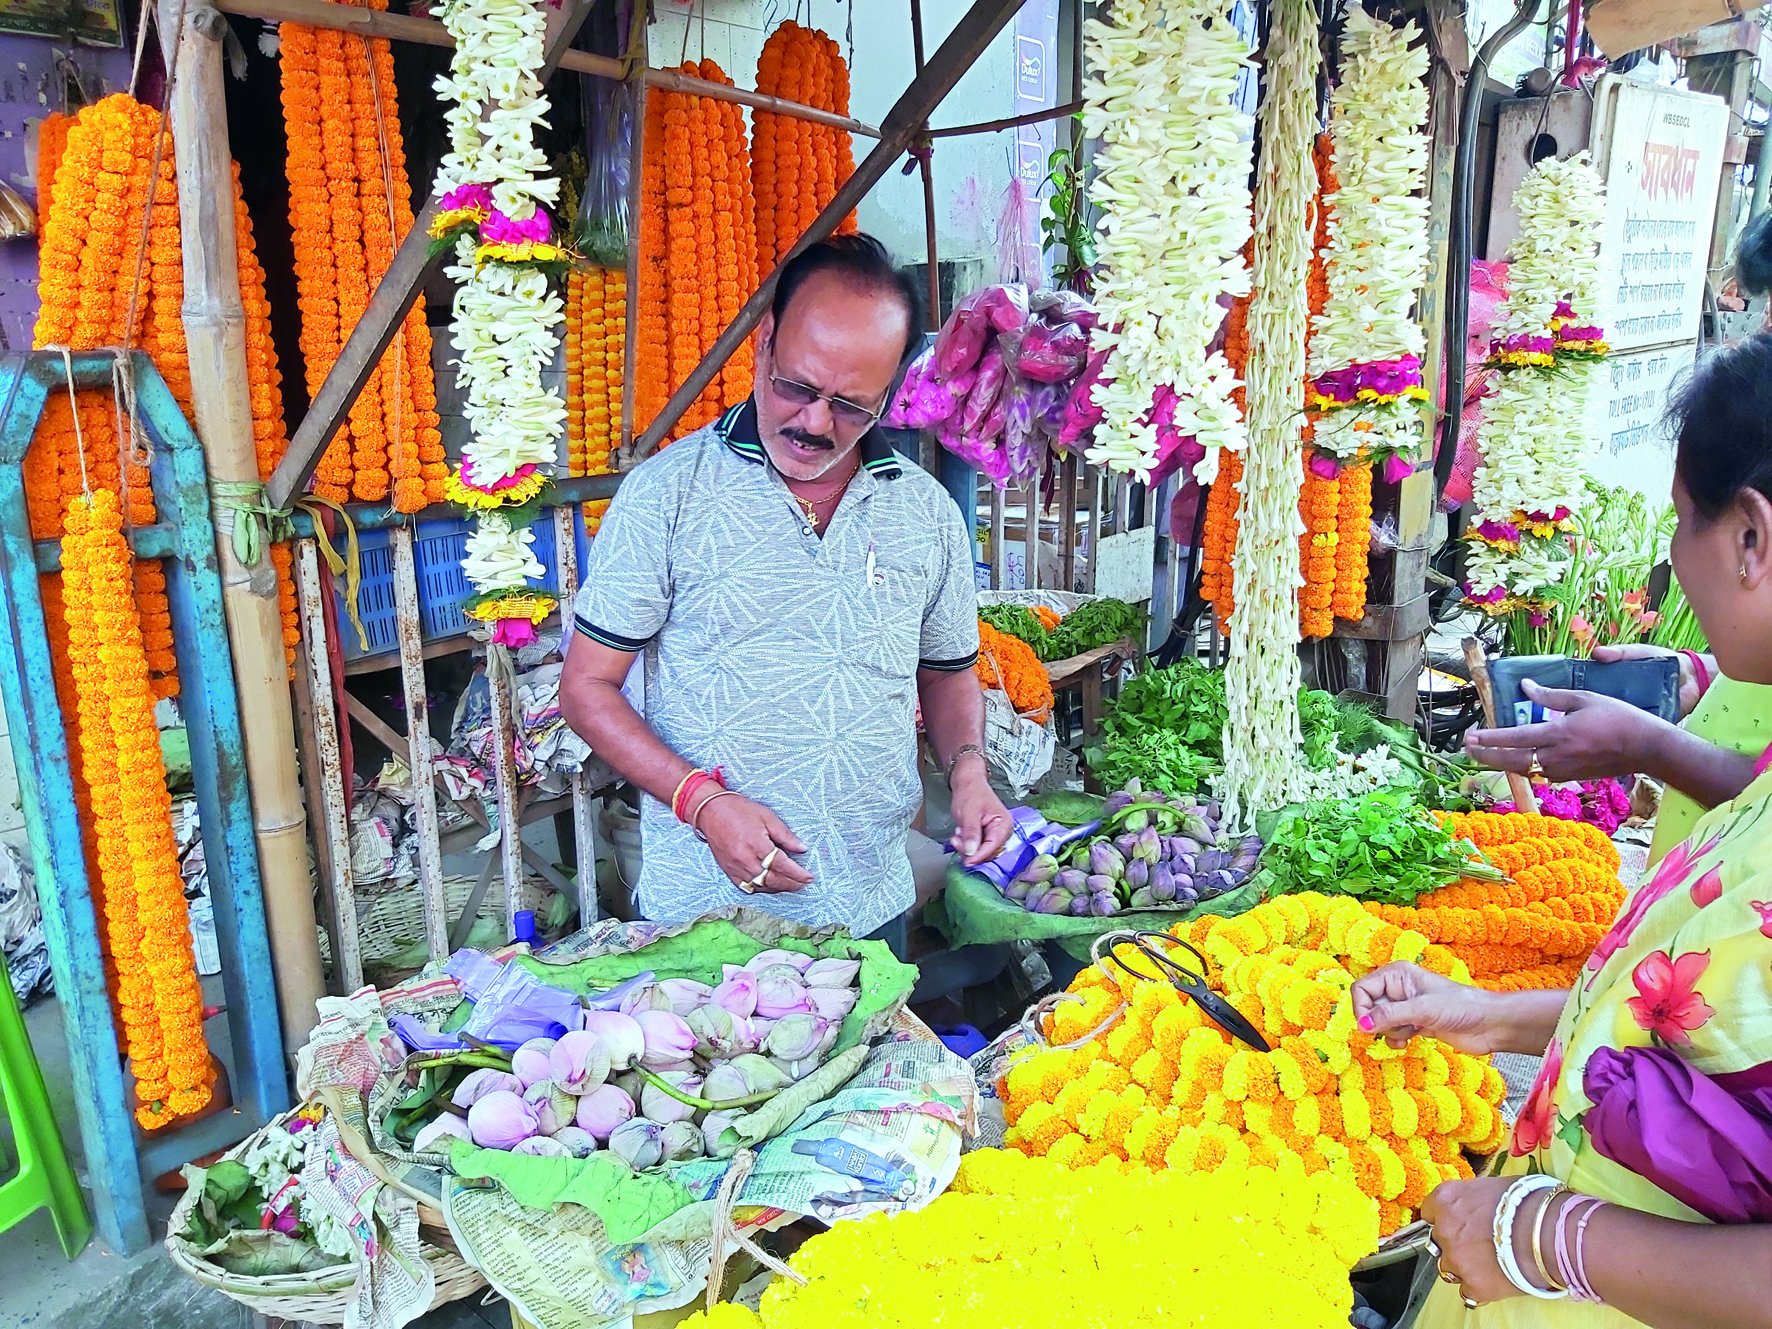 Lakshmi Puja: Lotus prices skyrocket in Balurghat